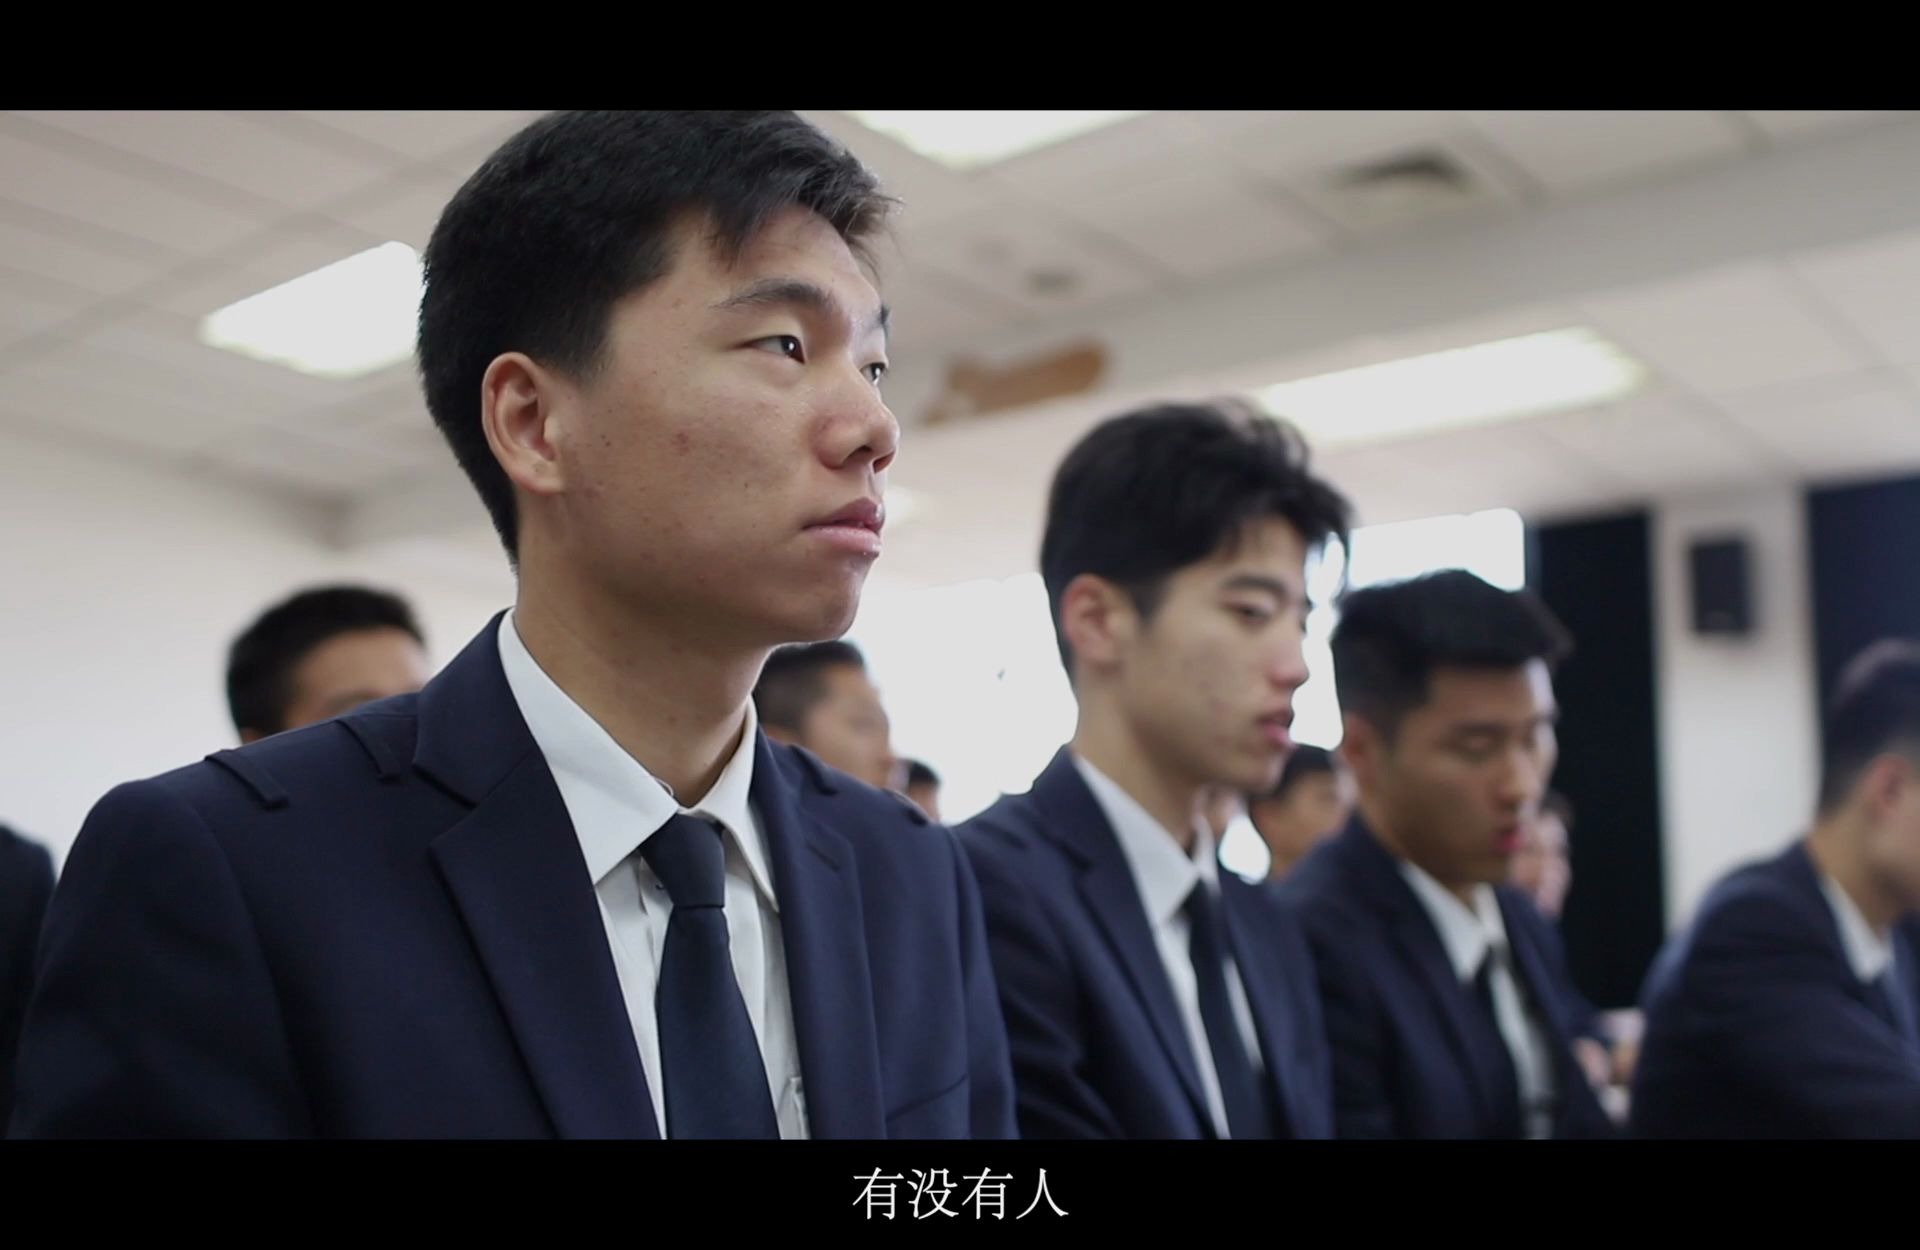 南京航空航天大学2017级飞行学生出征仪式开场视频！